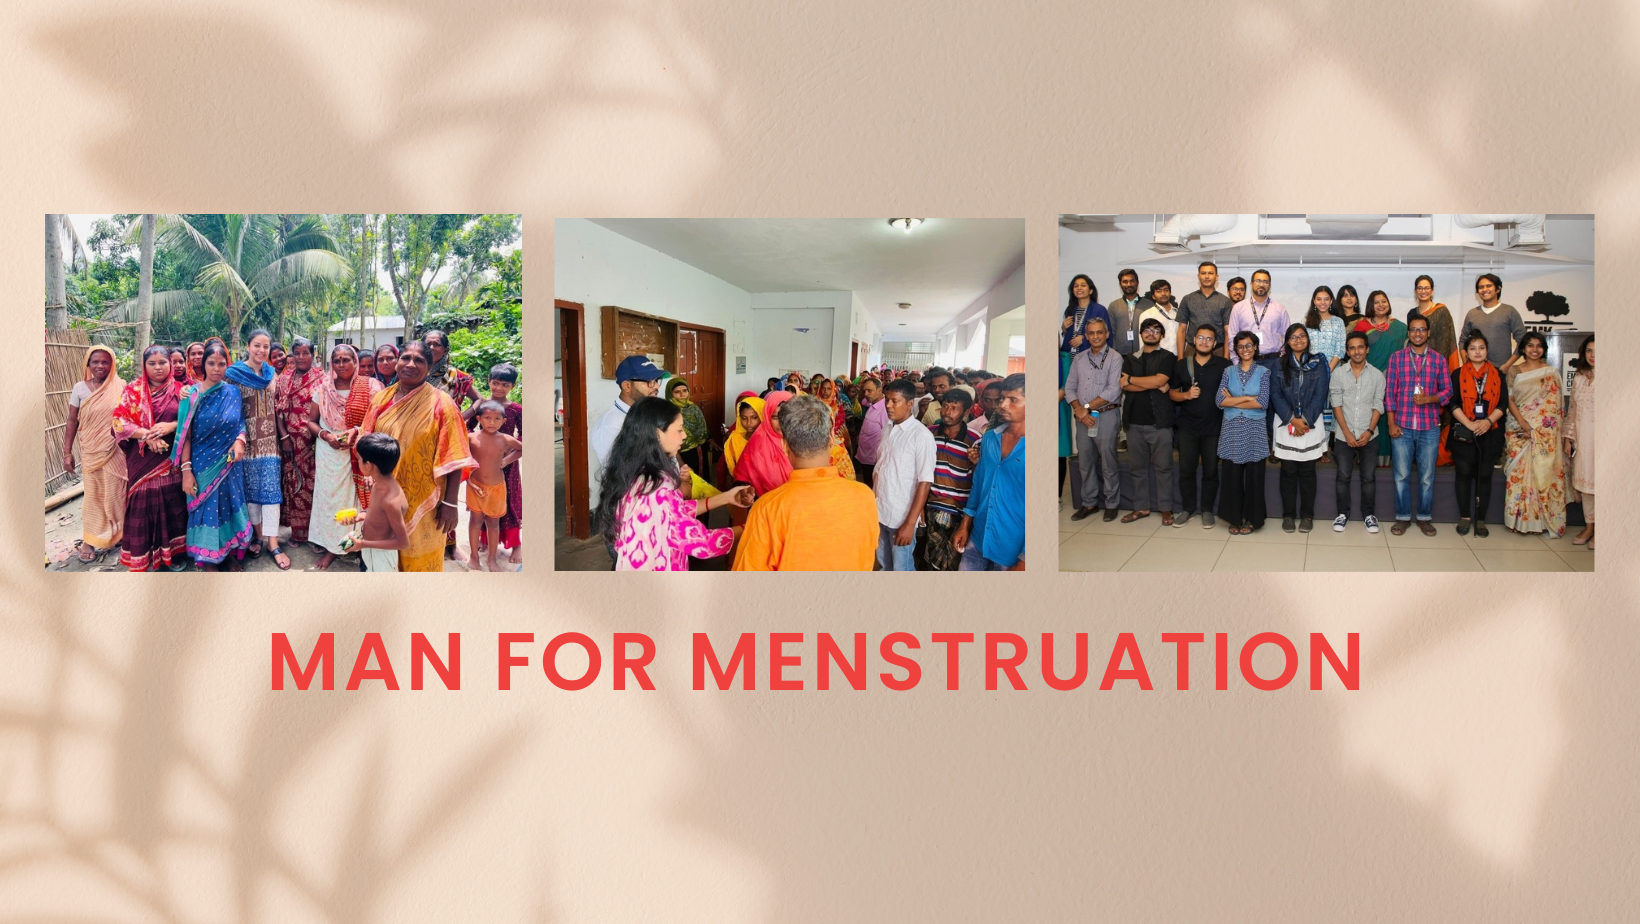 Men for Menstruation